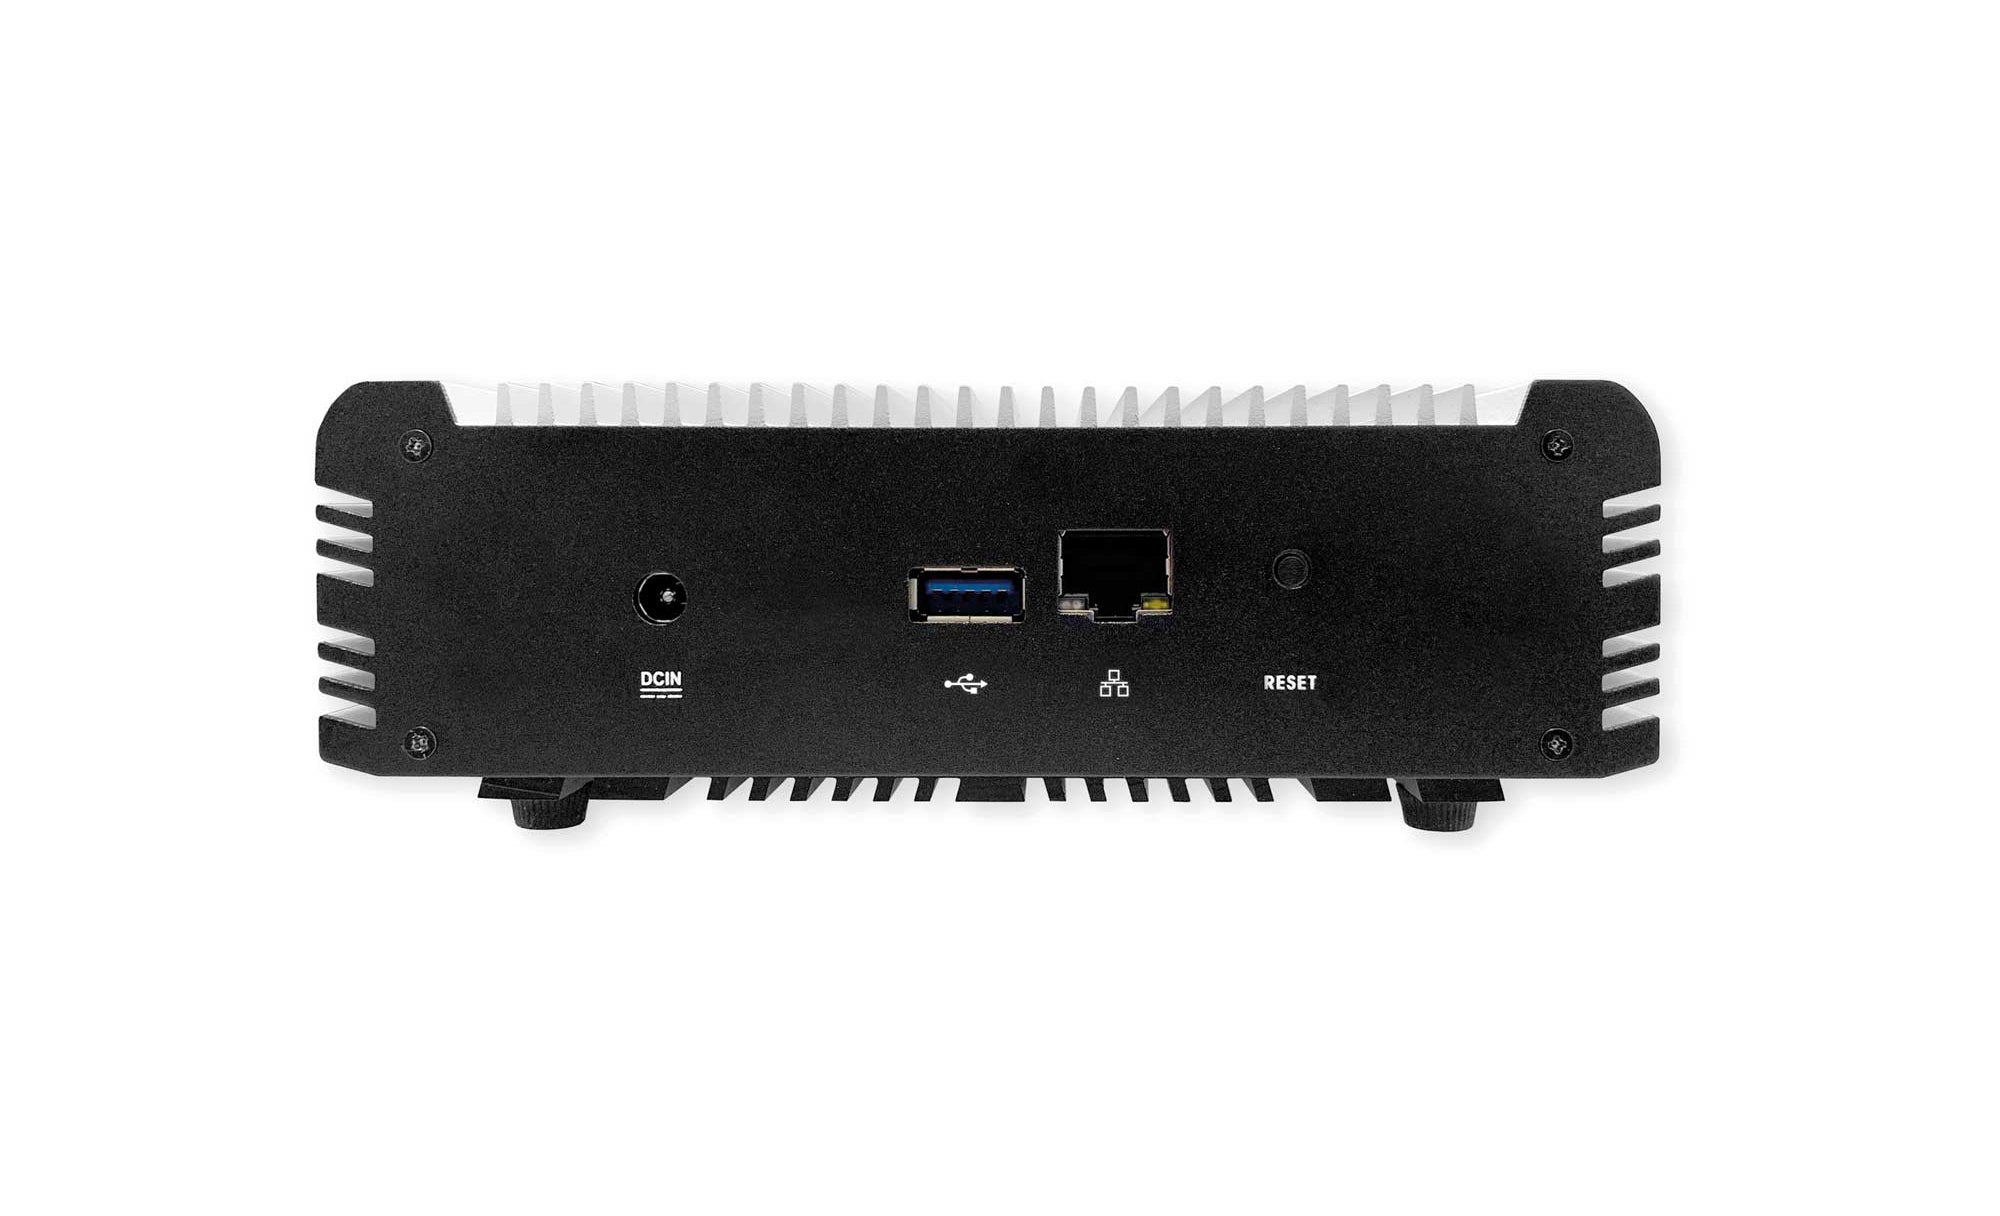 Modena Server Sistema de colaboración Inalámbrico permite conectarse de forma inalámbrica de Audio, Video y USB para hasta 7 Salas de juntas